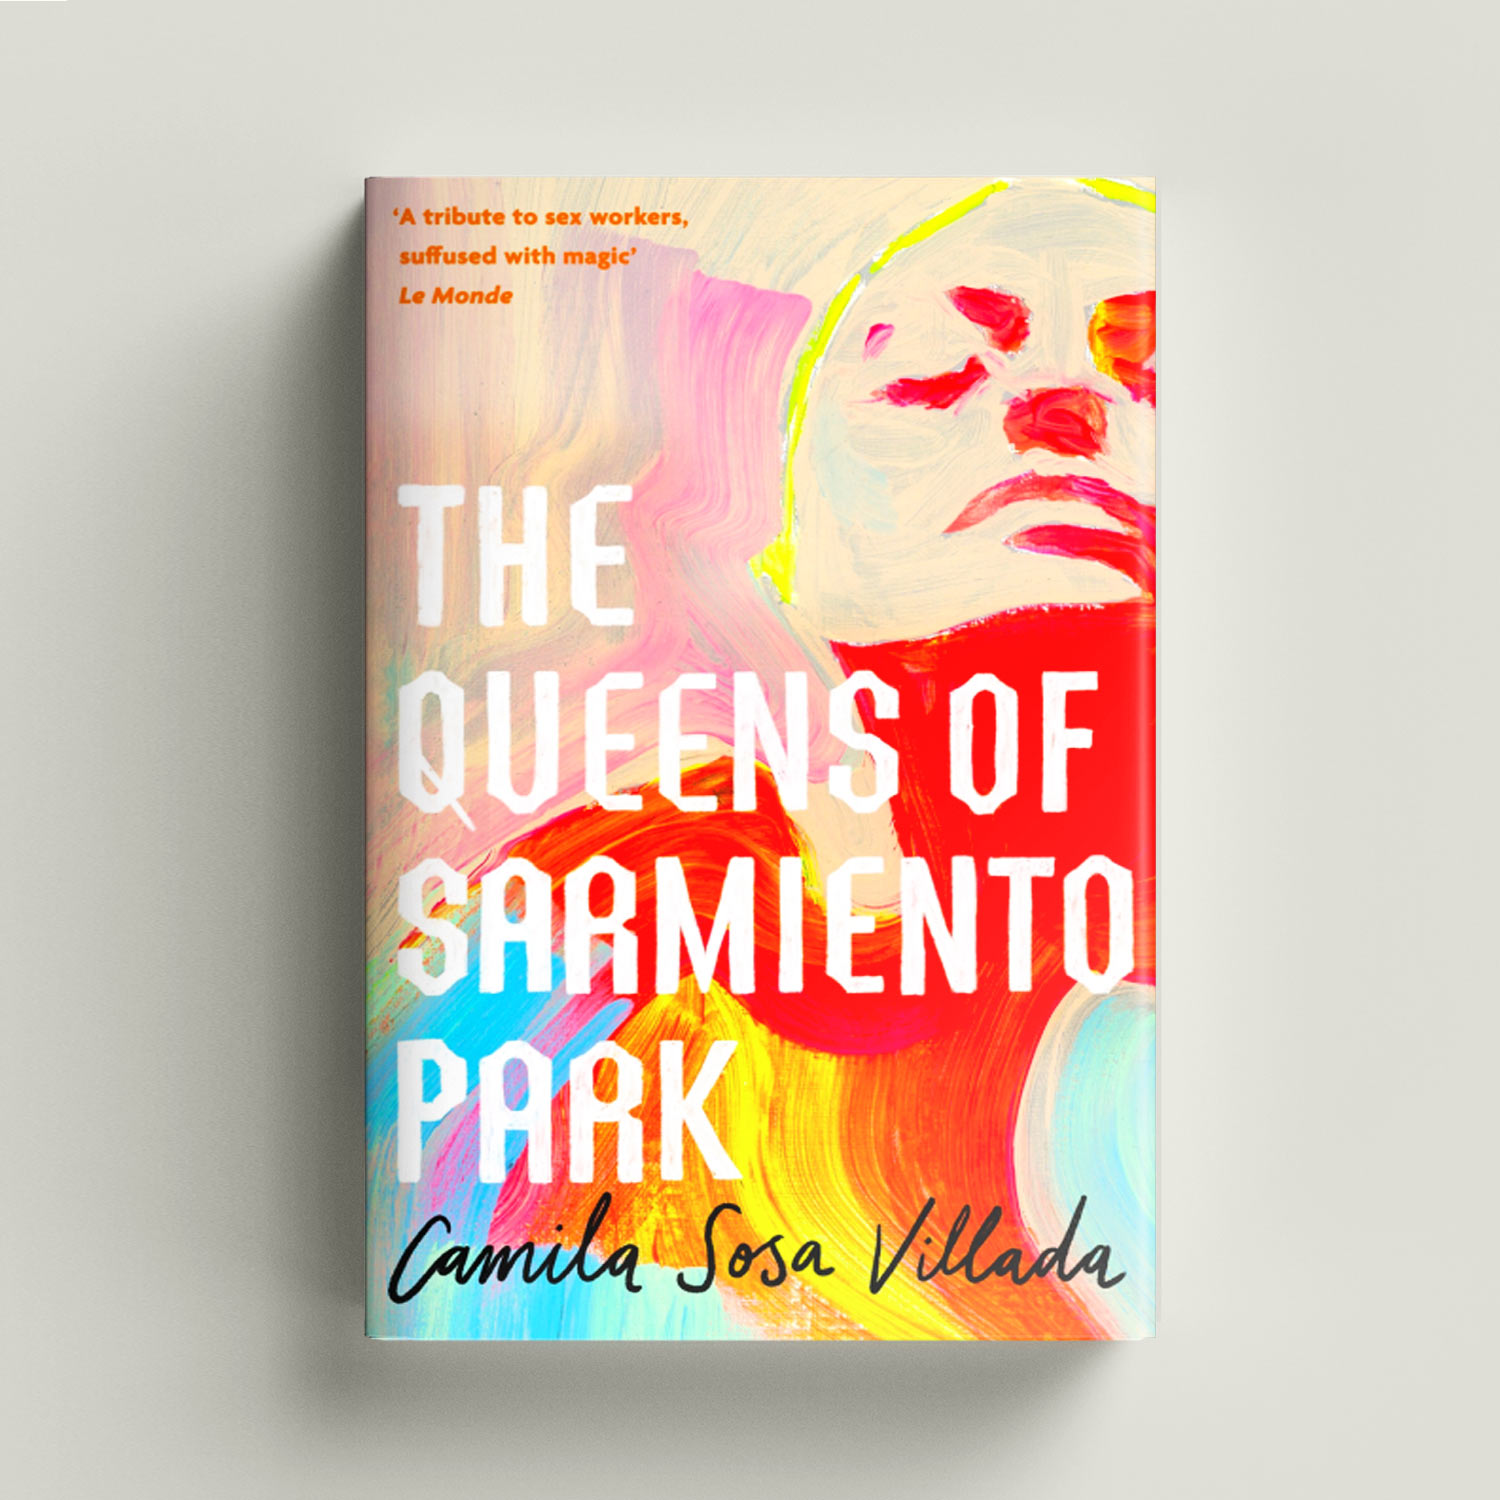 The Queens of Sarmiento Park by Camila Sosa Villada